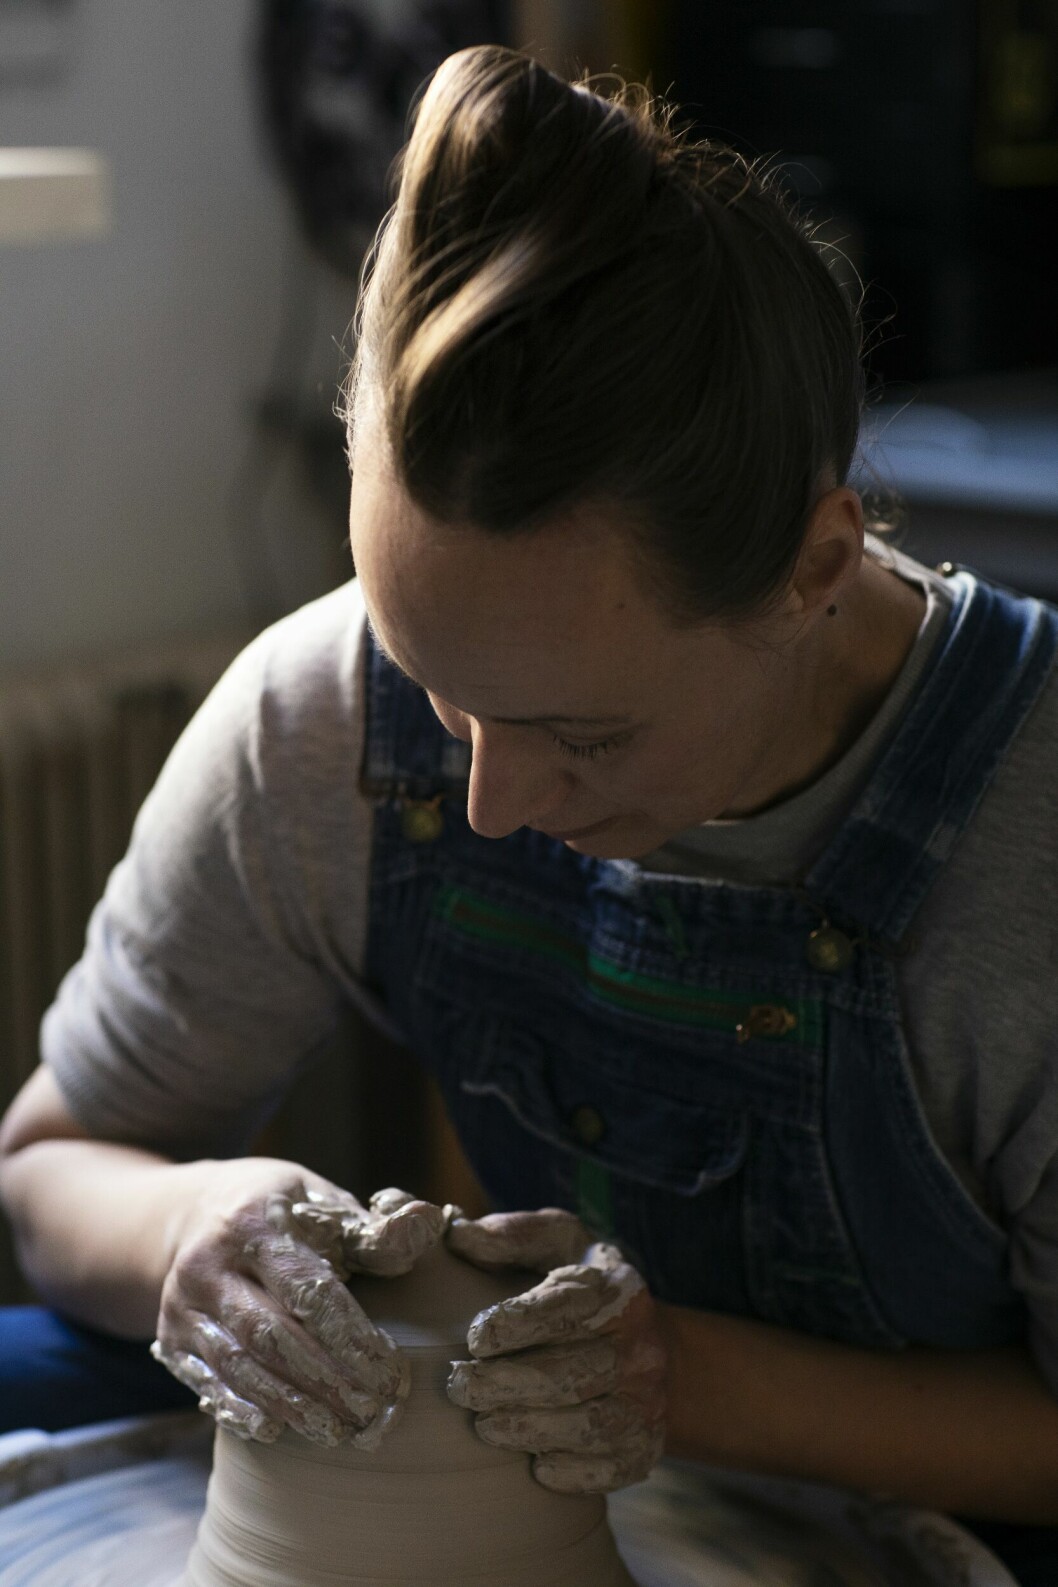 Keramikern Ingrid Unsöld om hantverkets växande popularitet